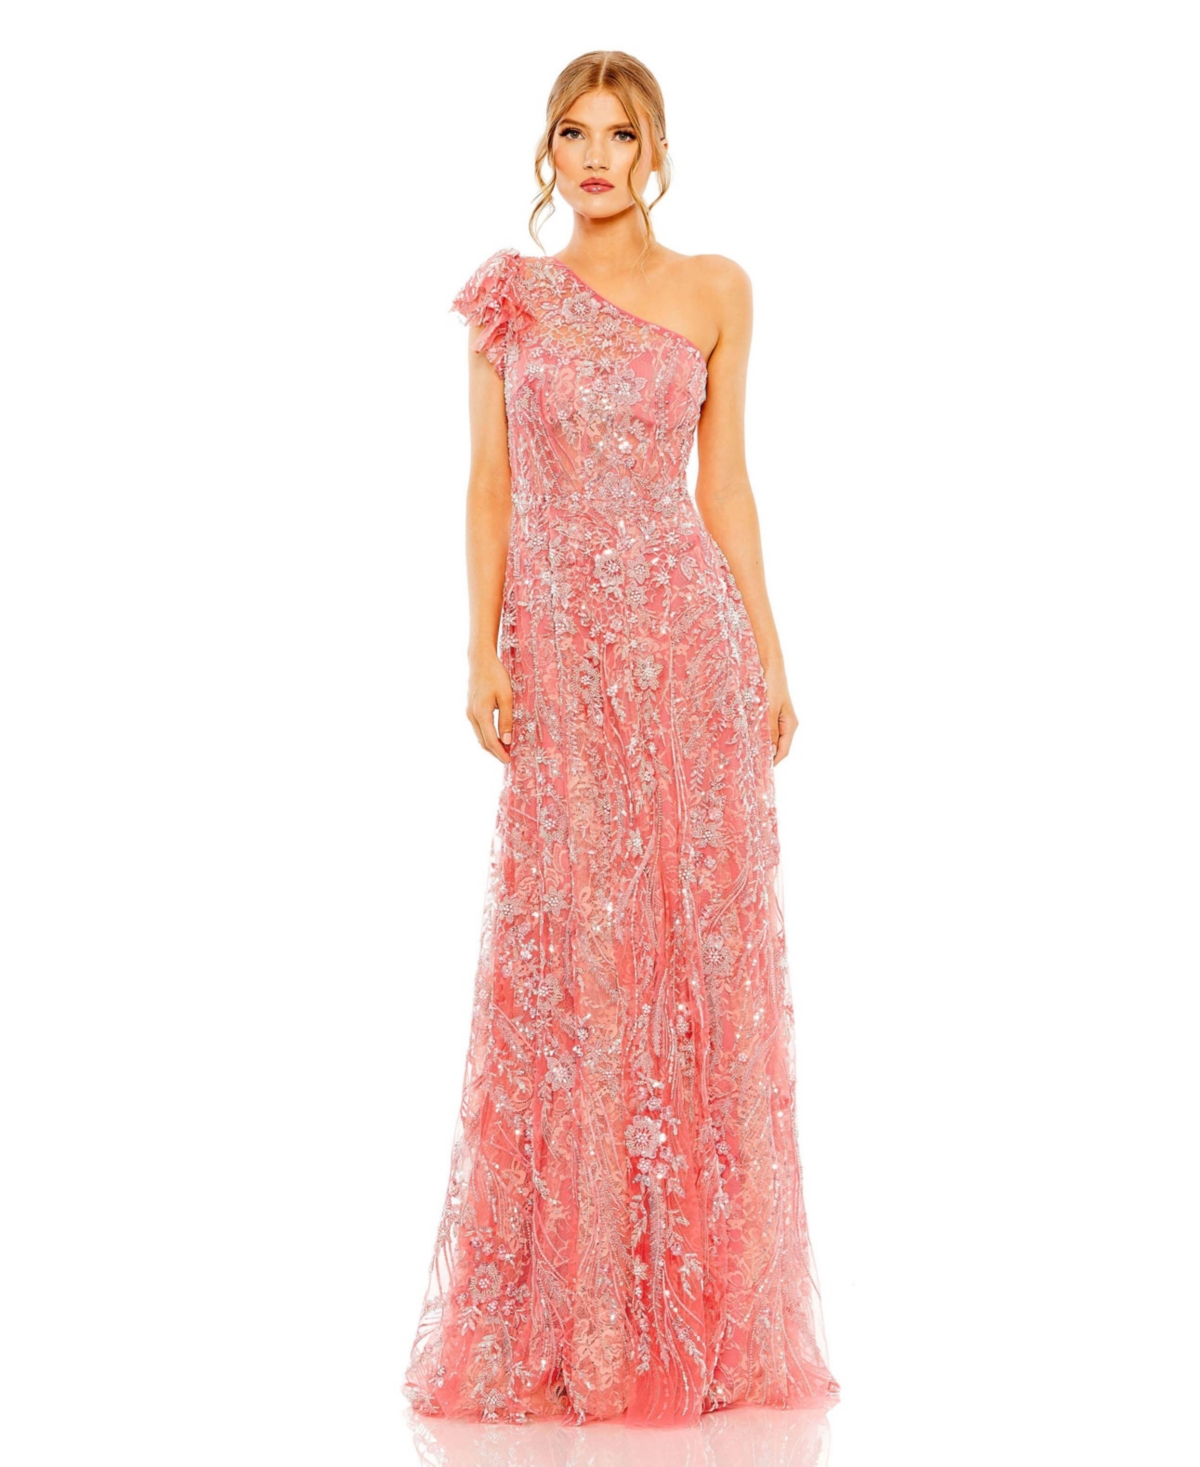 Vintage Evening Dresses, Vintage Formal Dresses Womens One Shoulder Flutter Sleeve Embellished Gown - Coral $698.00 AT vintagedancer.com